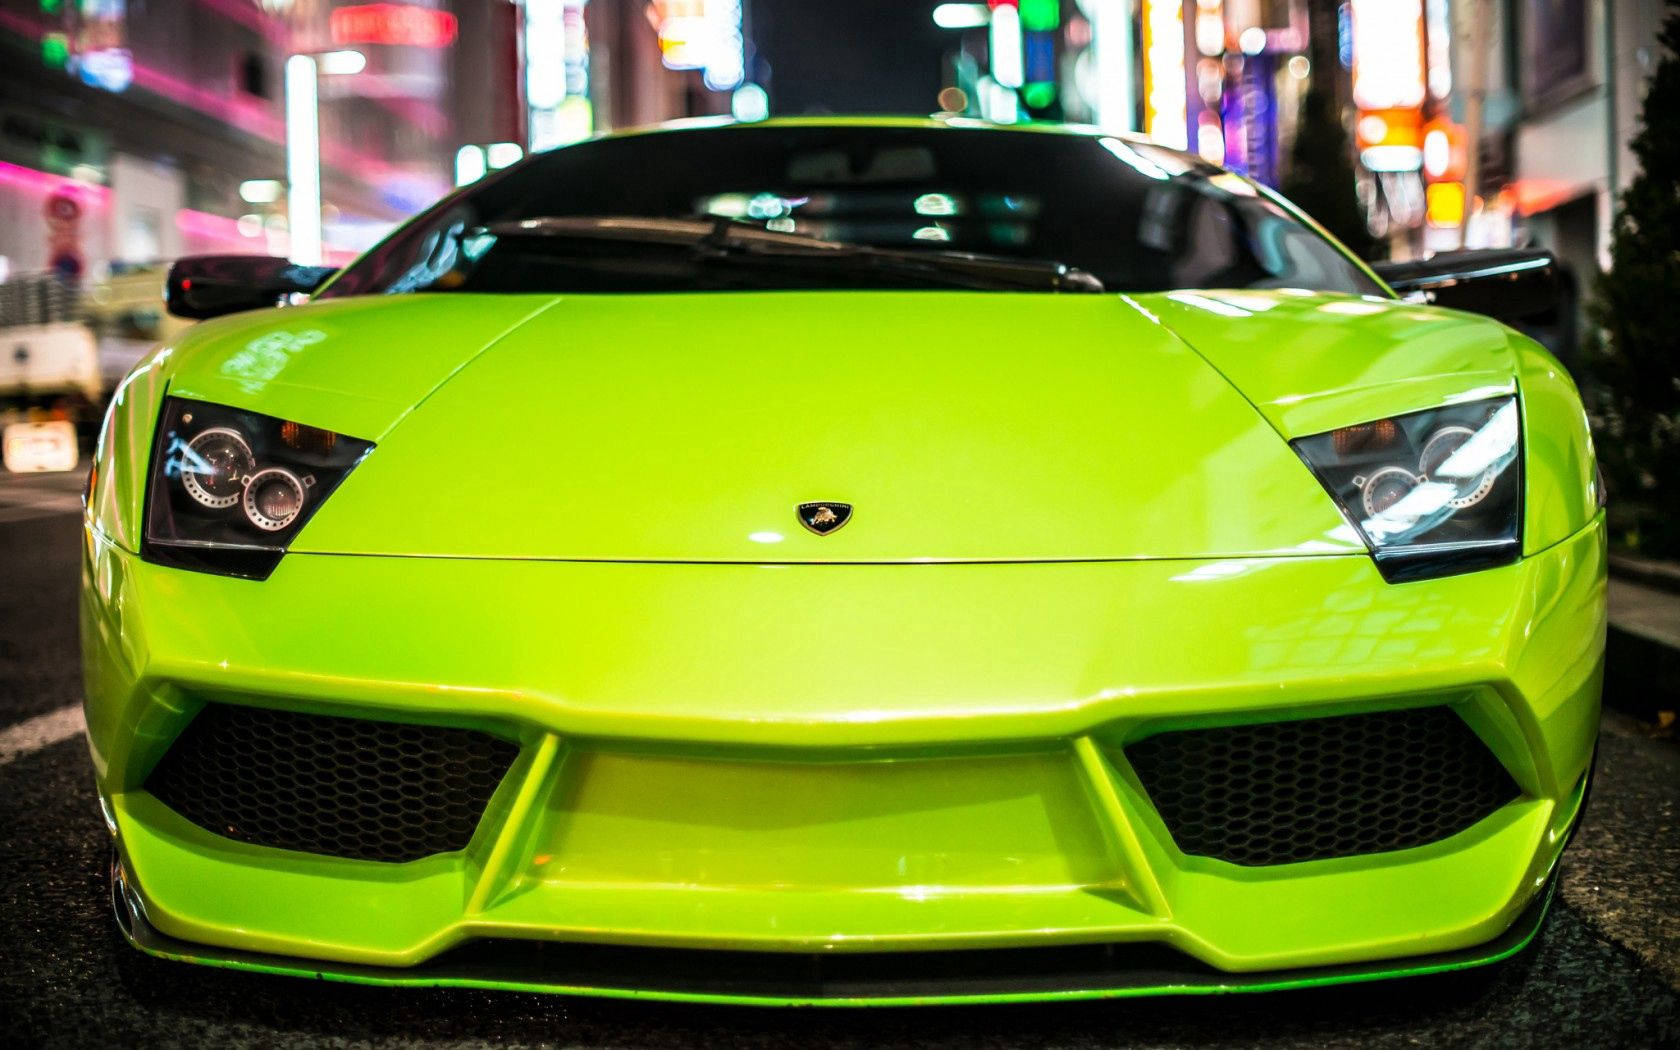 Cool Lamborghini Gallardo Car In Neon Green